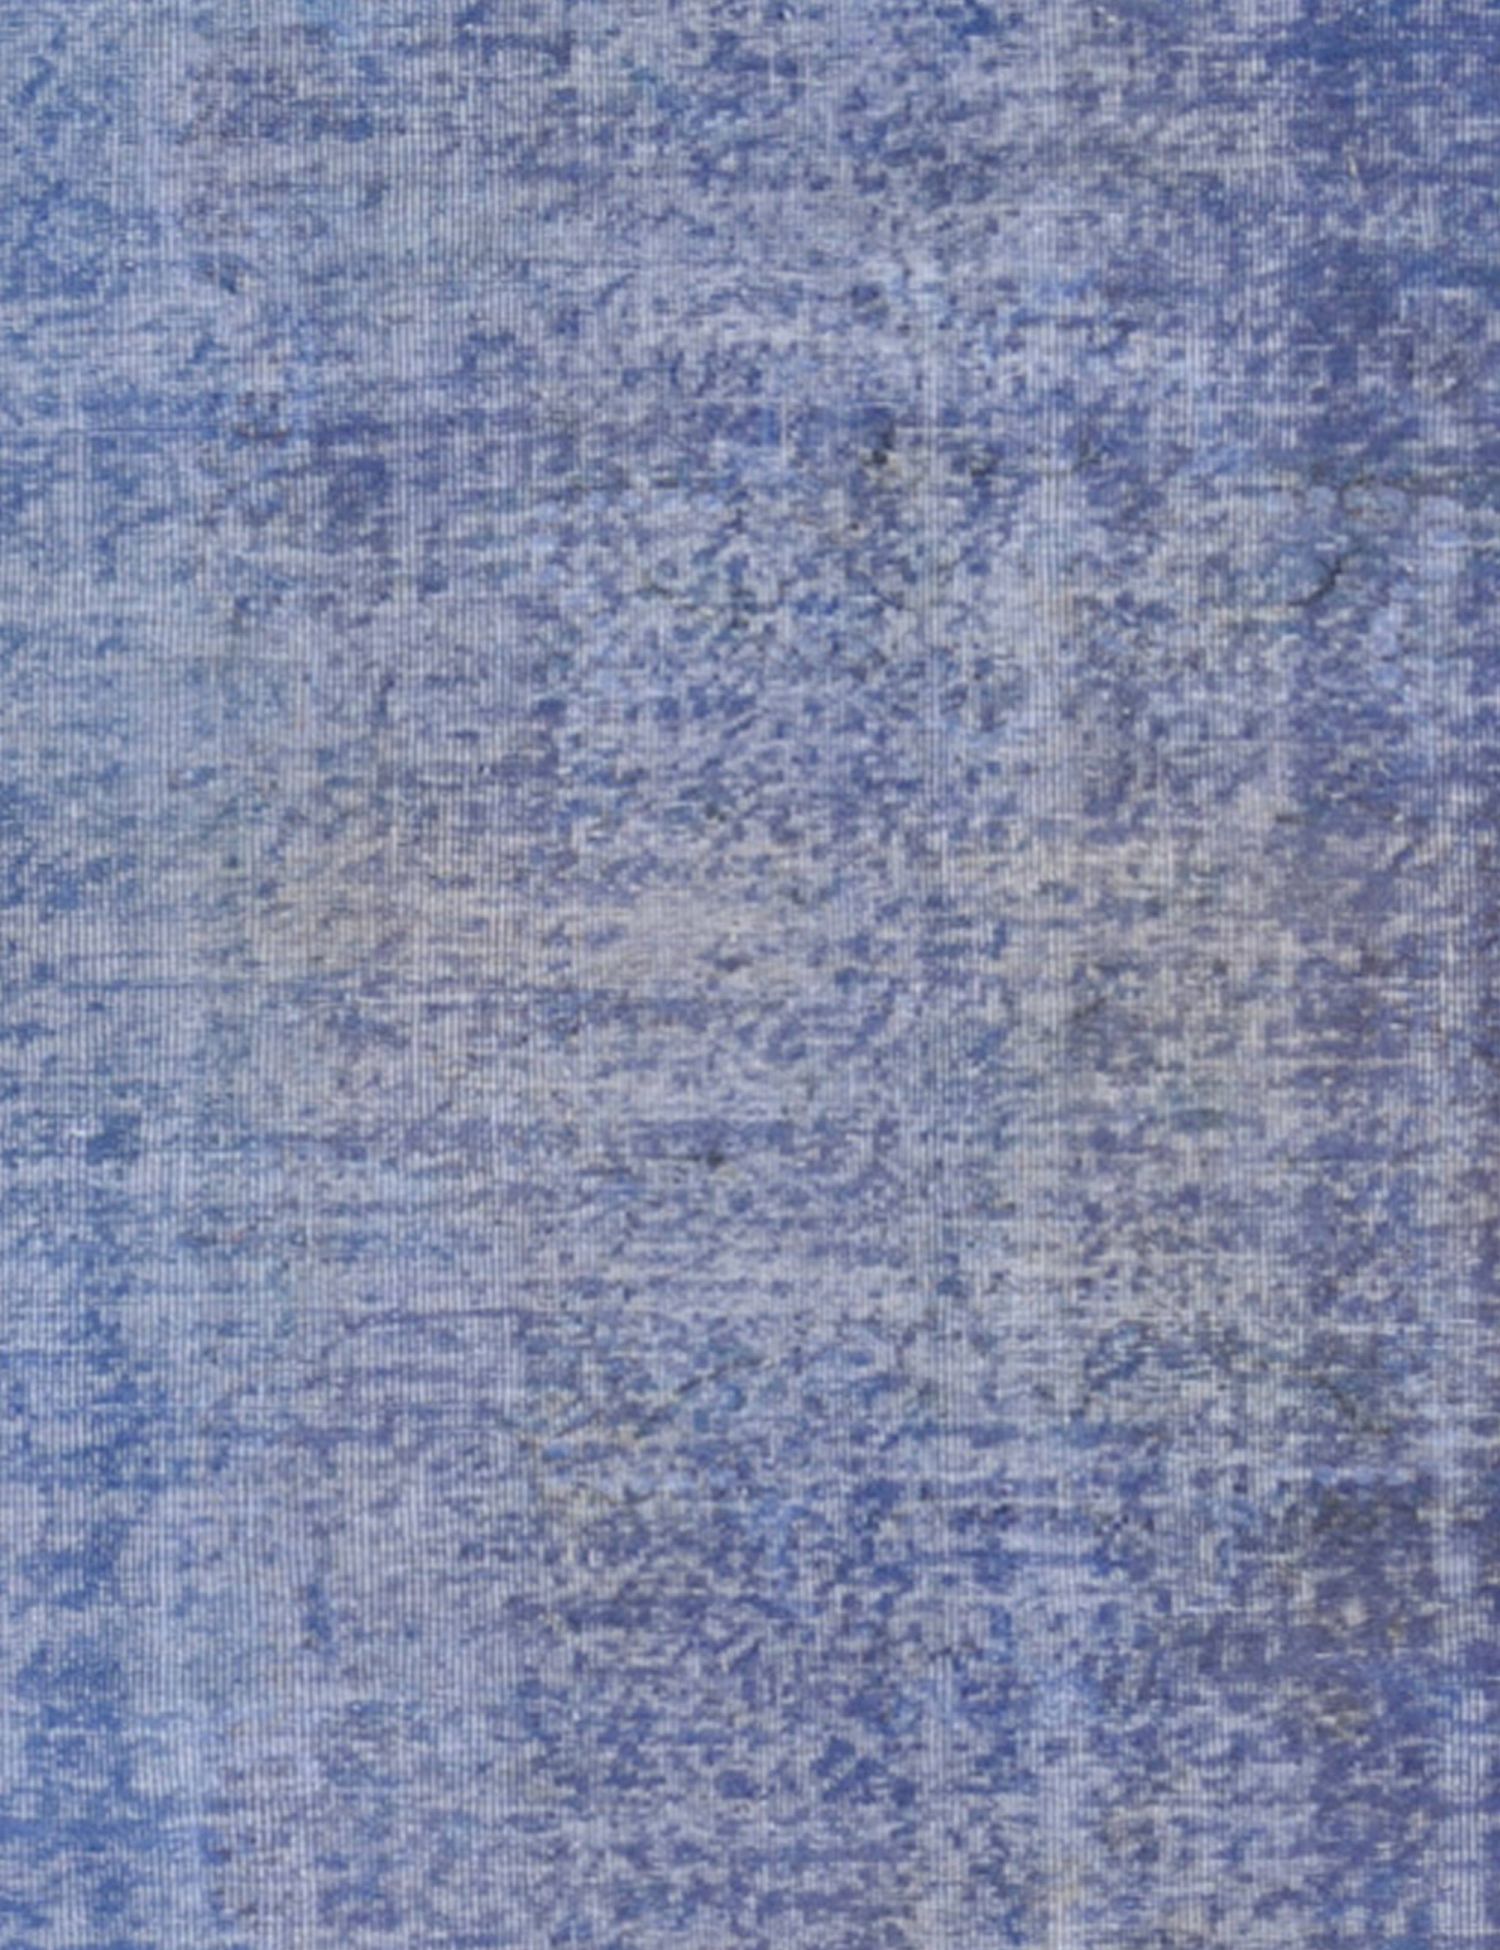 Vintage Teppich  blau <br/>180 x 180 cm